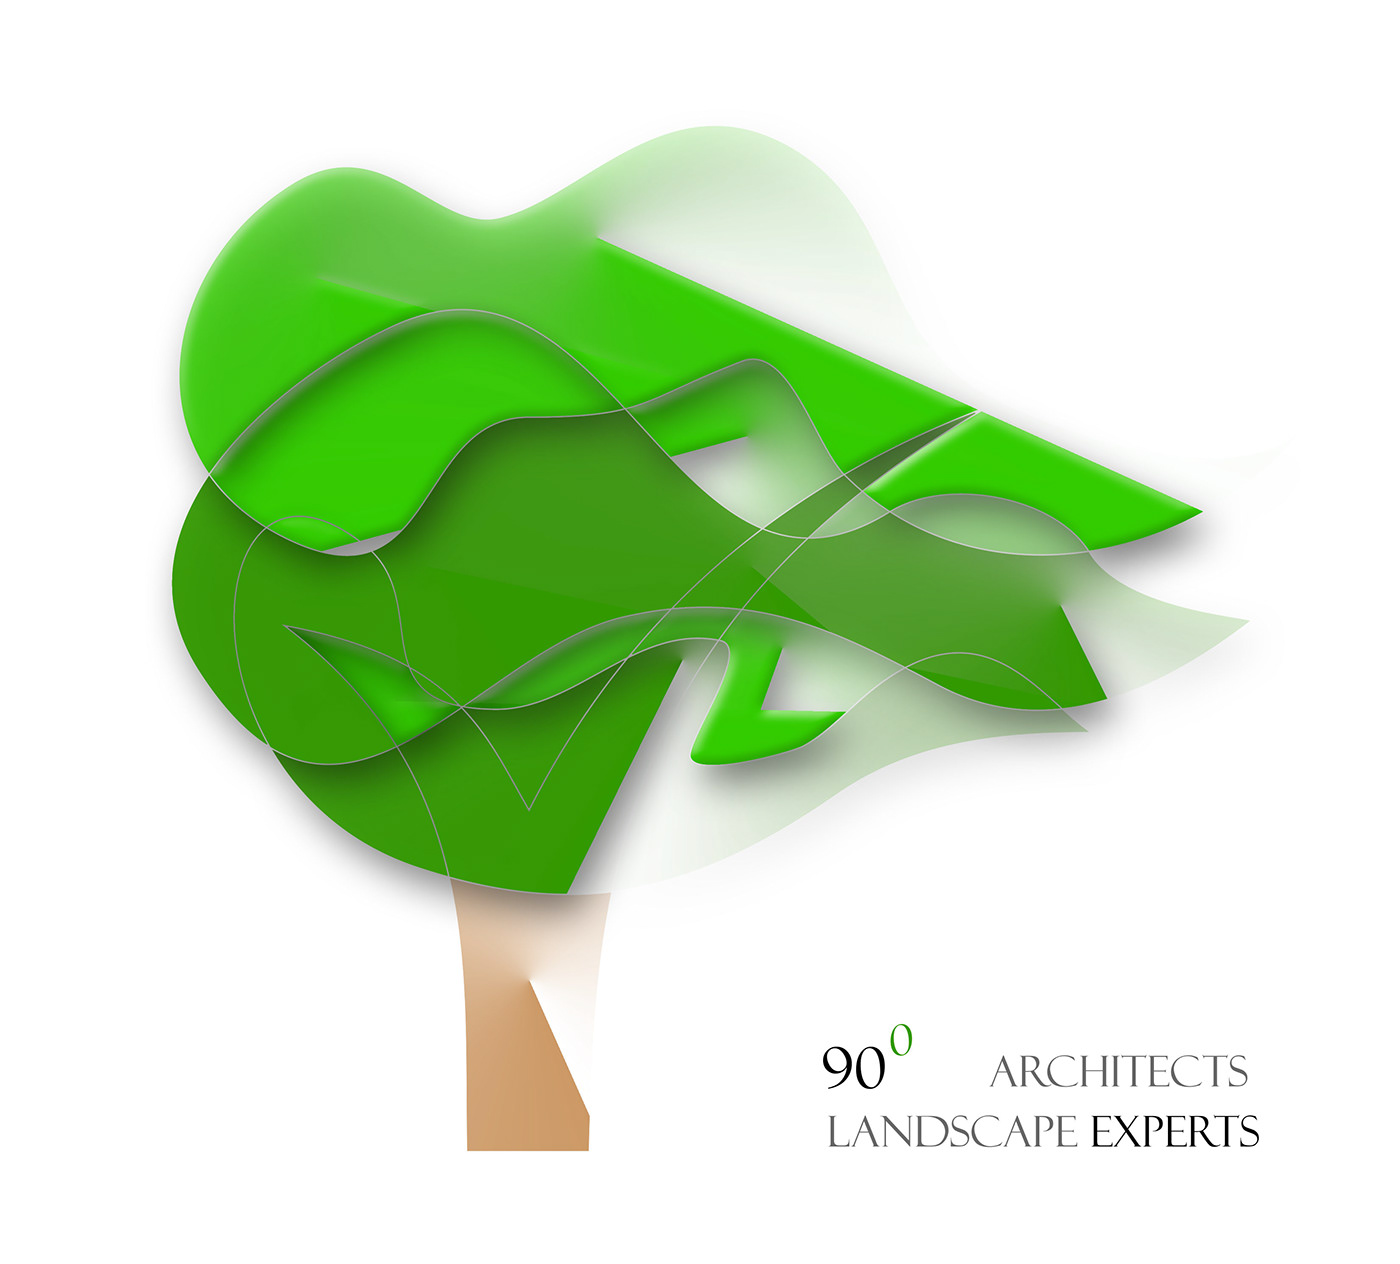 architects logos landscape logos architects illustrations landscape illustrations architects and landscape logos of architects logos of landscape